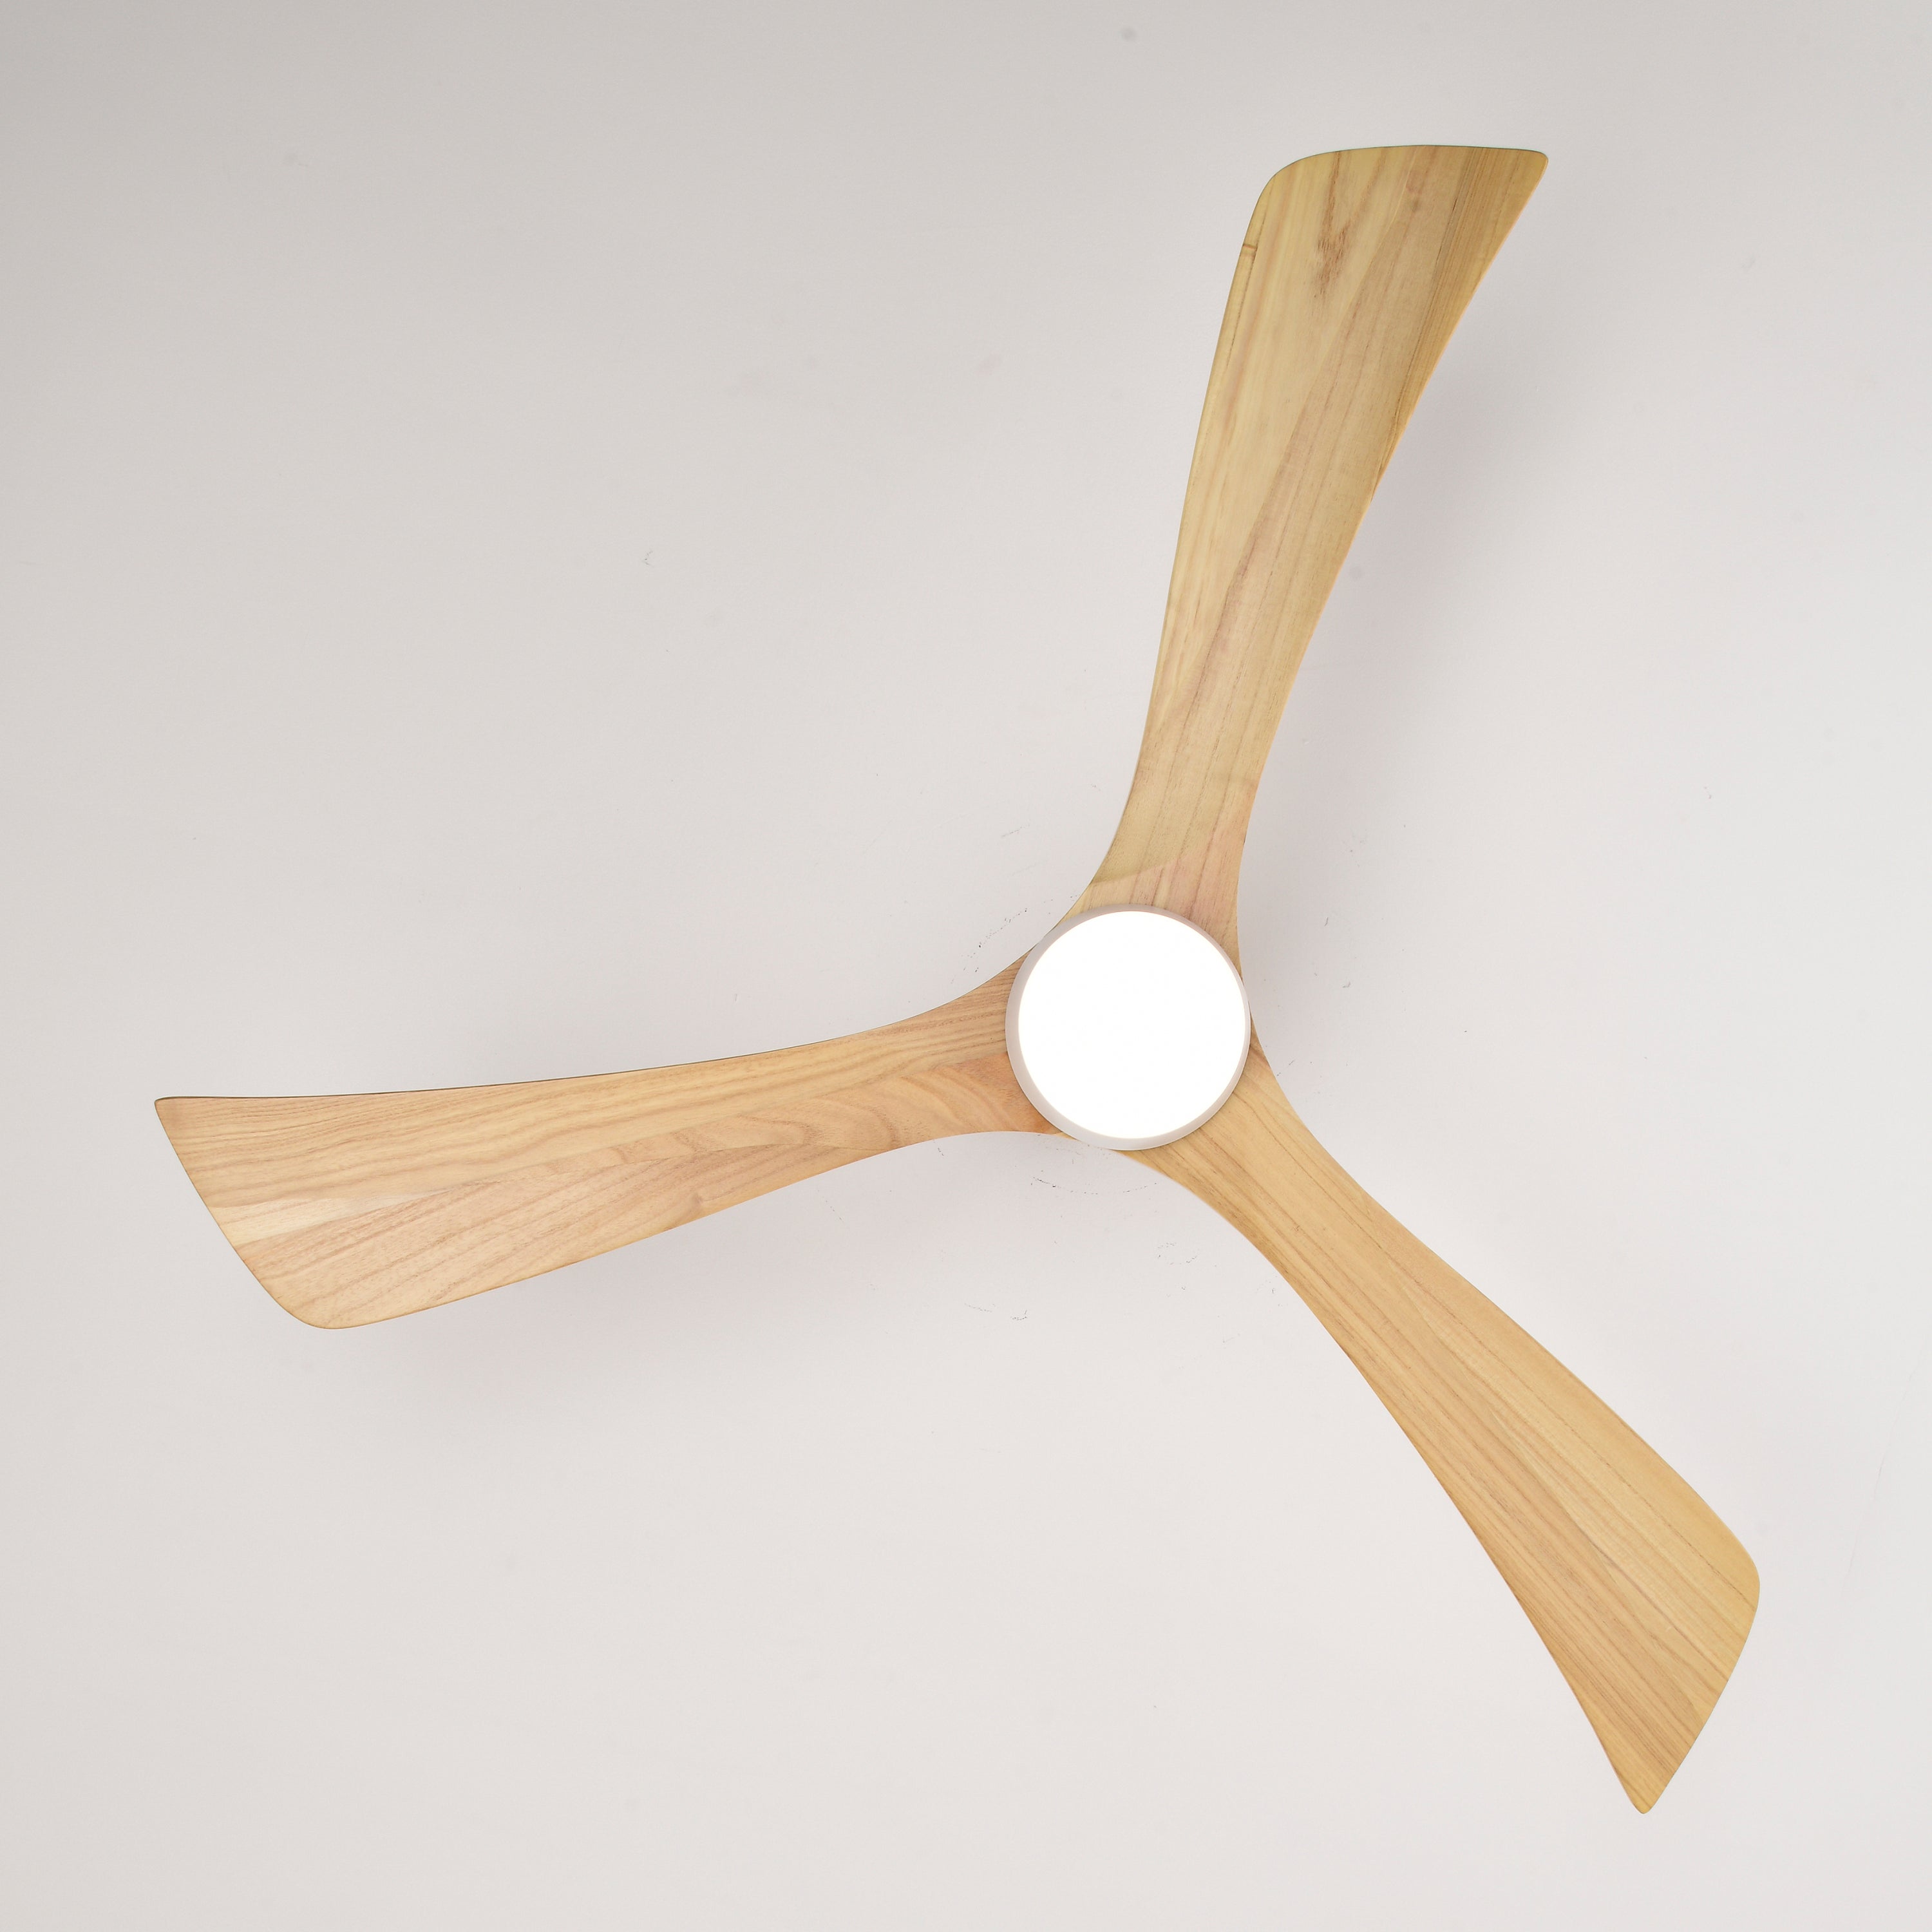 52" Wood Iron Wood Ceiling Fan